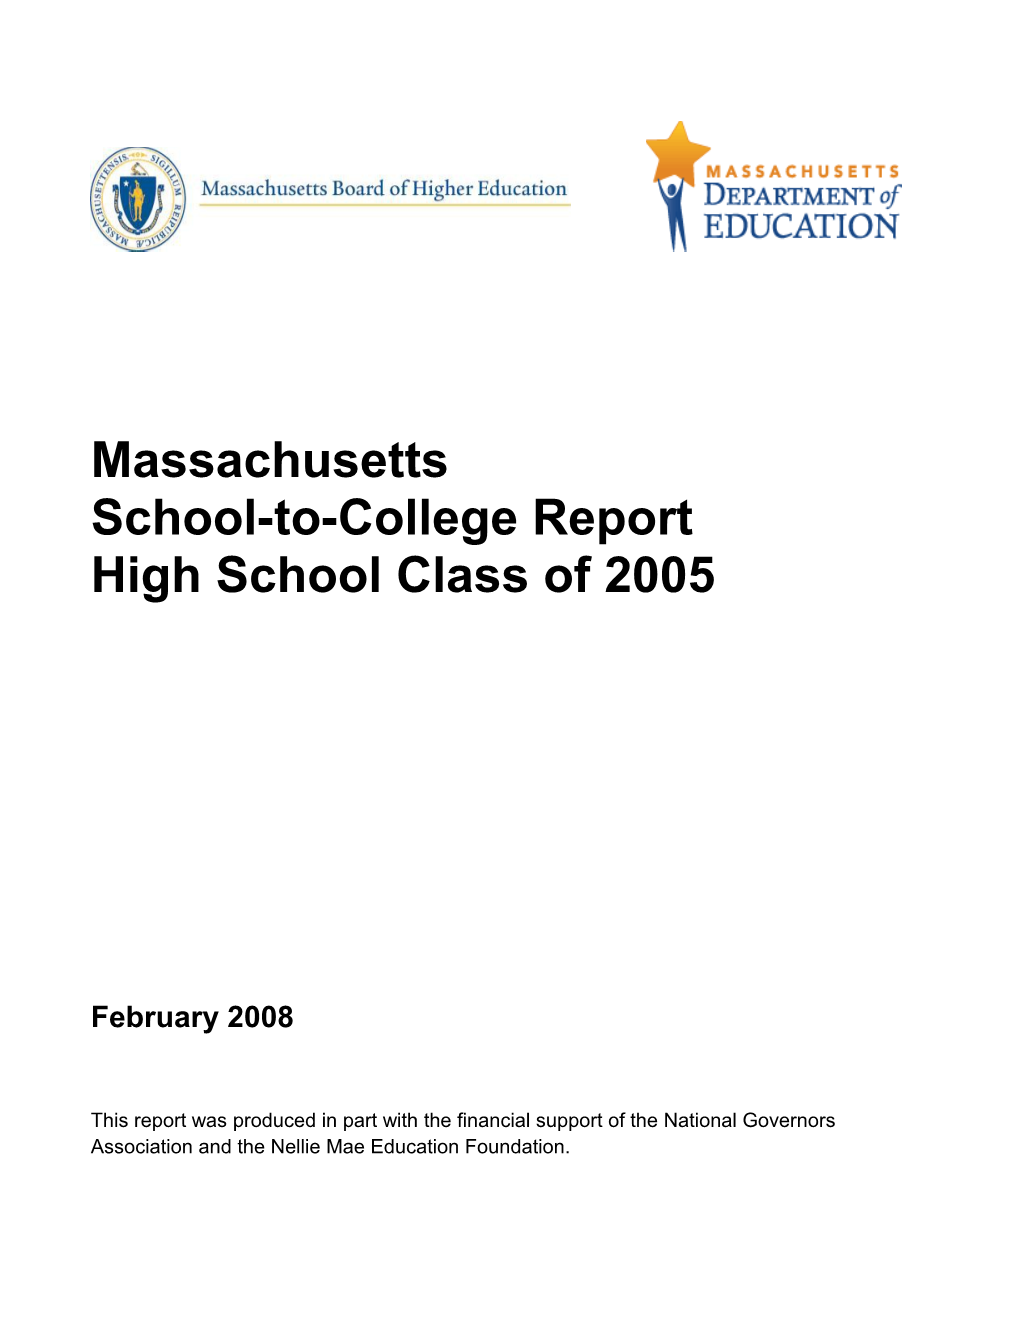 Massachusetts School-To-College Report High School Class of 2005